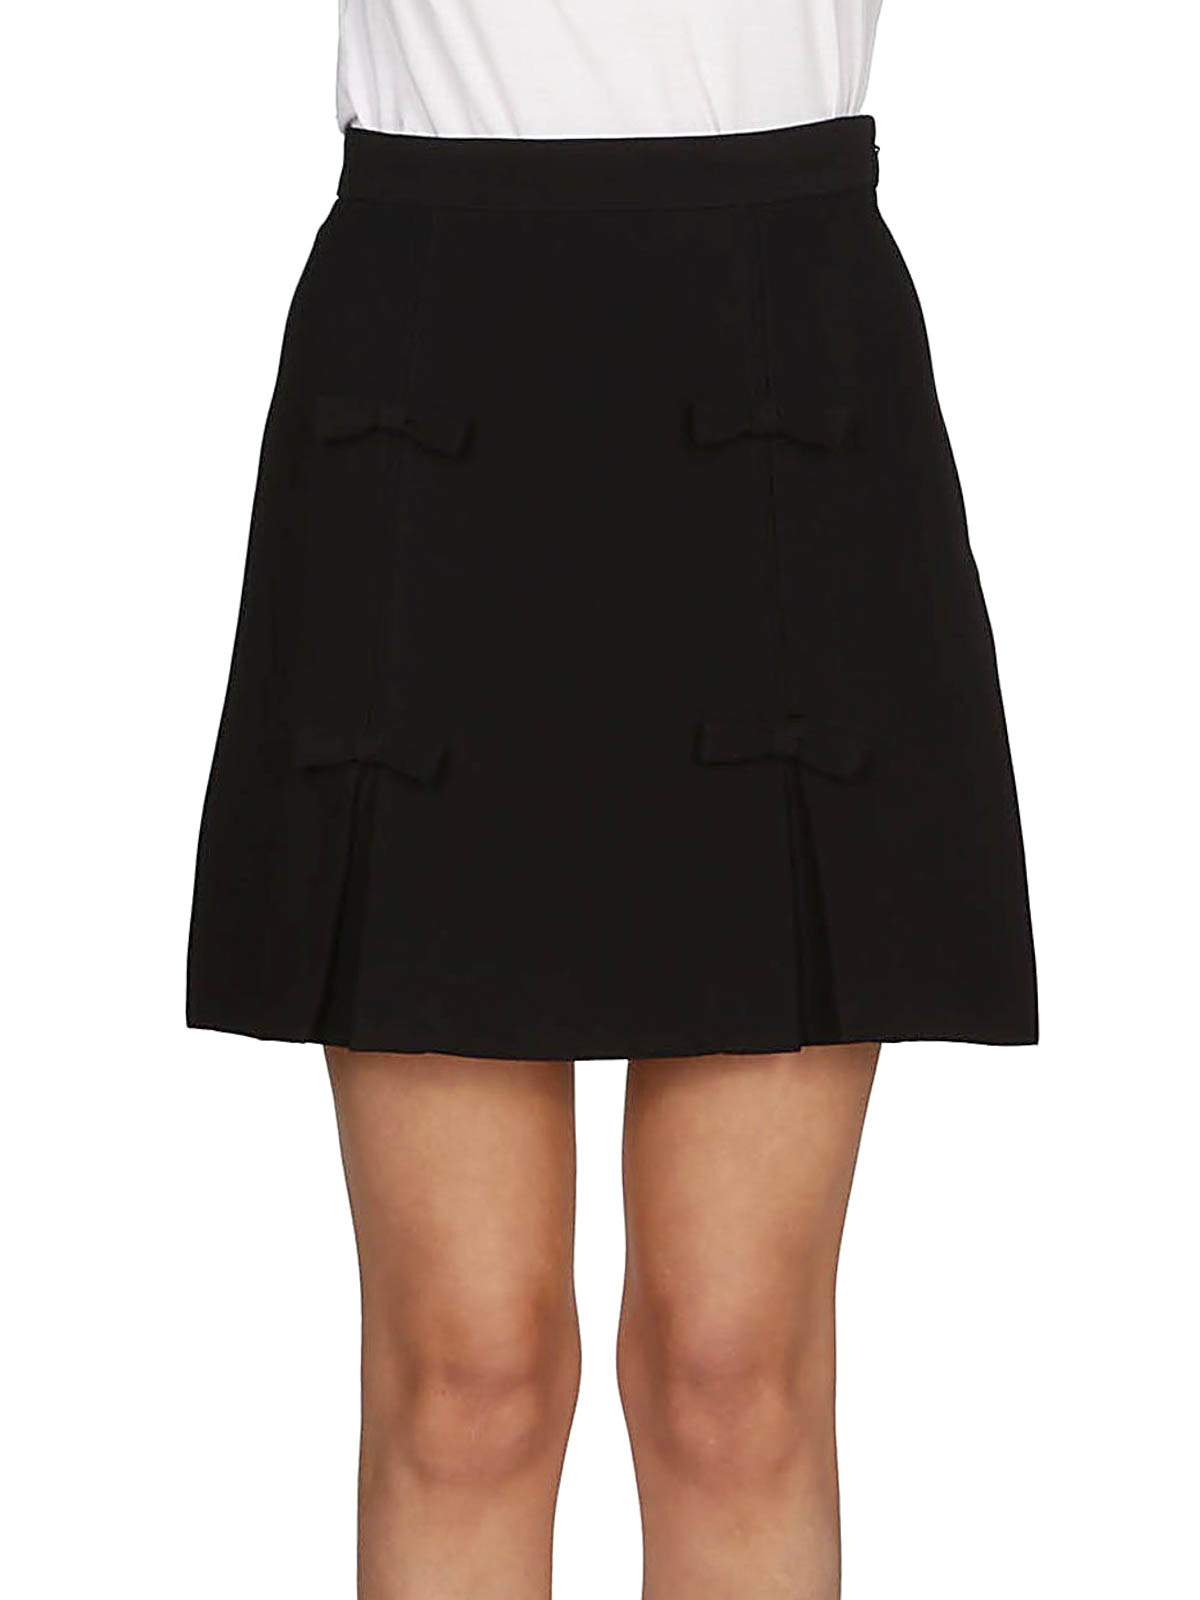 Mini skirts Miu Miu - Black cady skirt with bows - MG1209186F0002